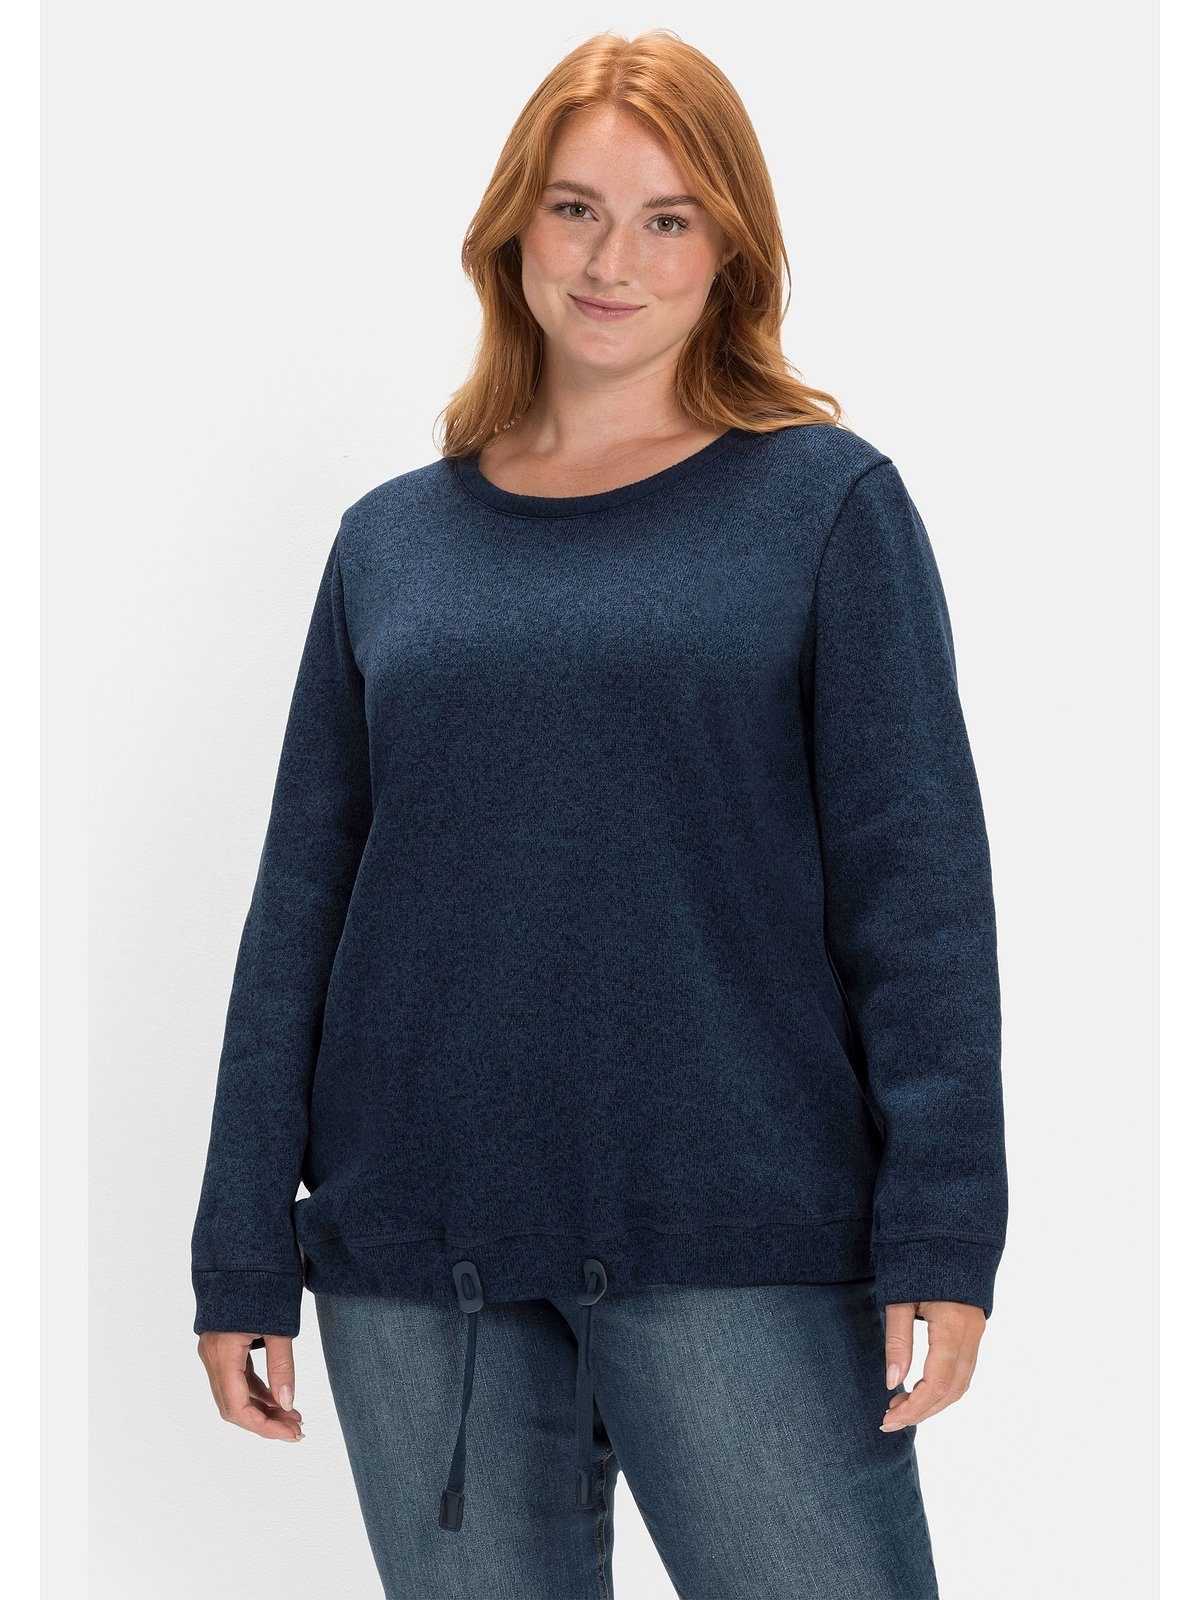 Sheego Sweatshirt Große Größen aus Strickfleece, mit Saum-Tunnelzug nachtblau meliert